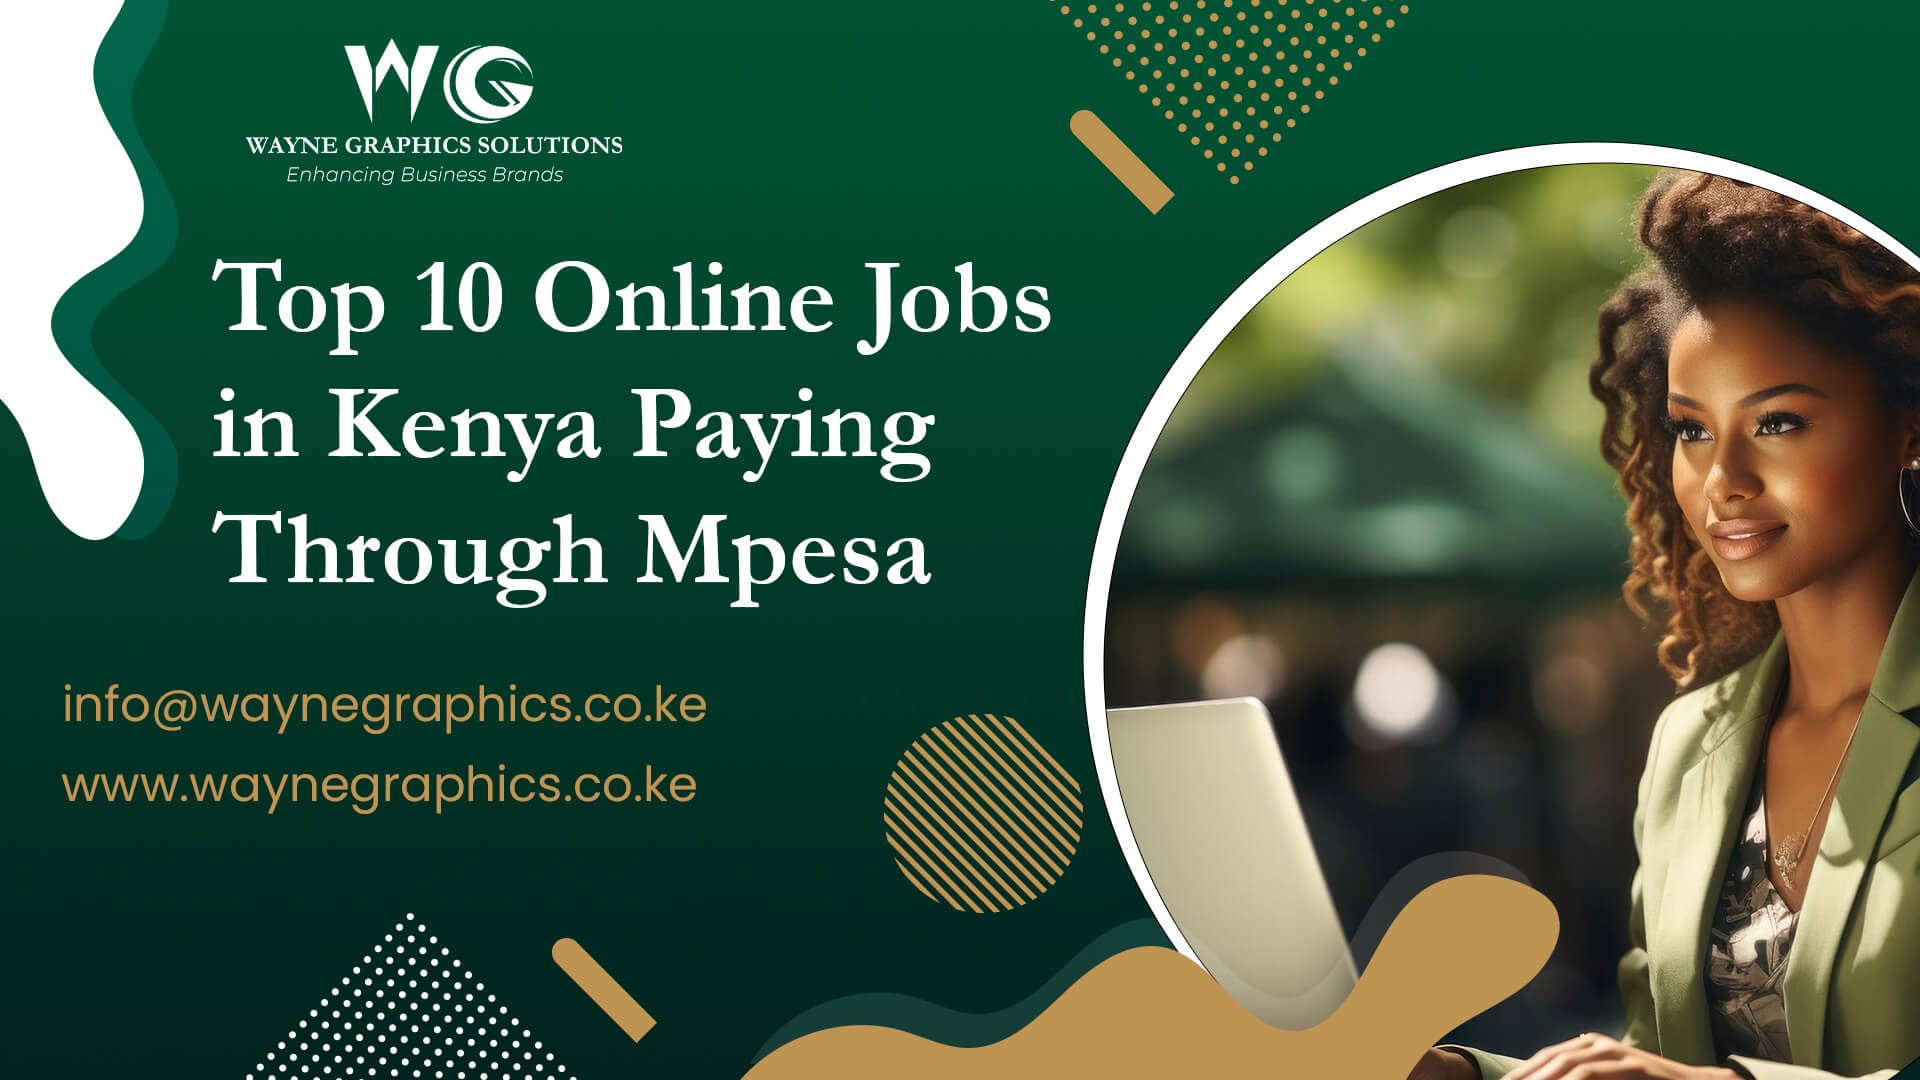 Online Jobs in Kenya Paying Through Mpesa